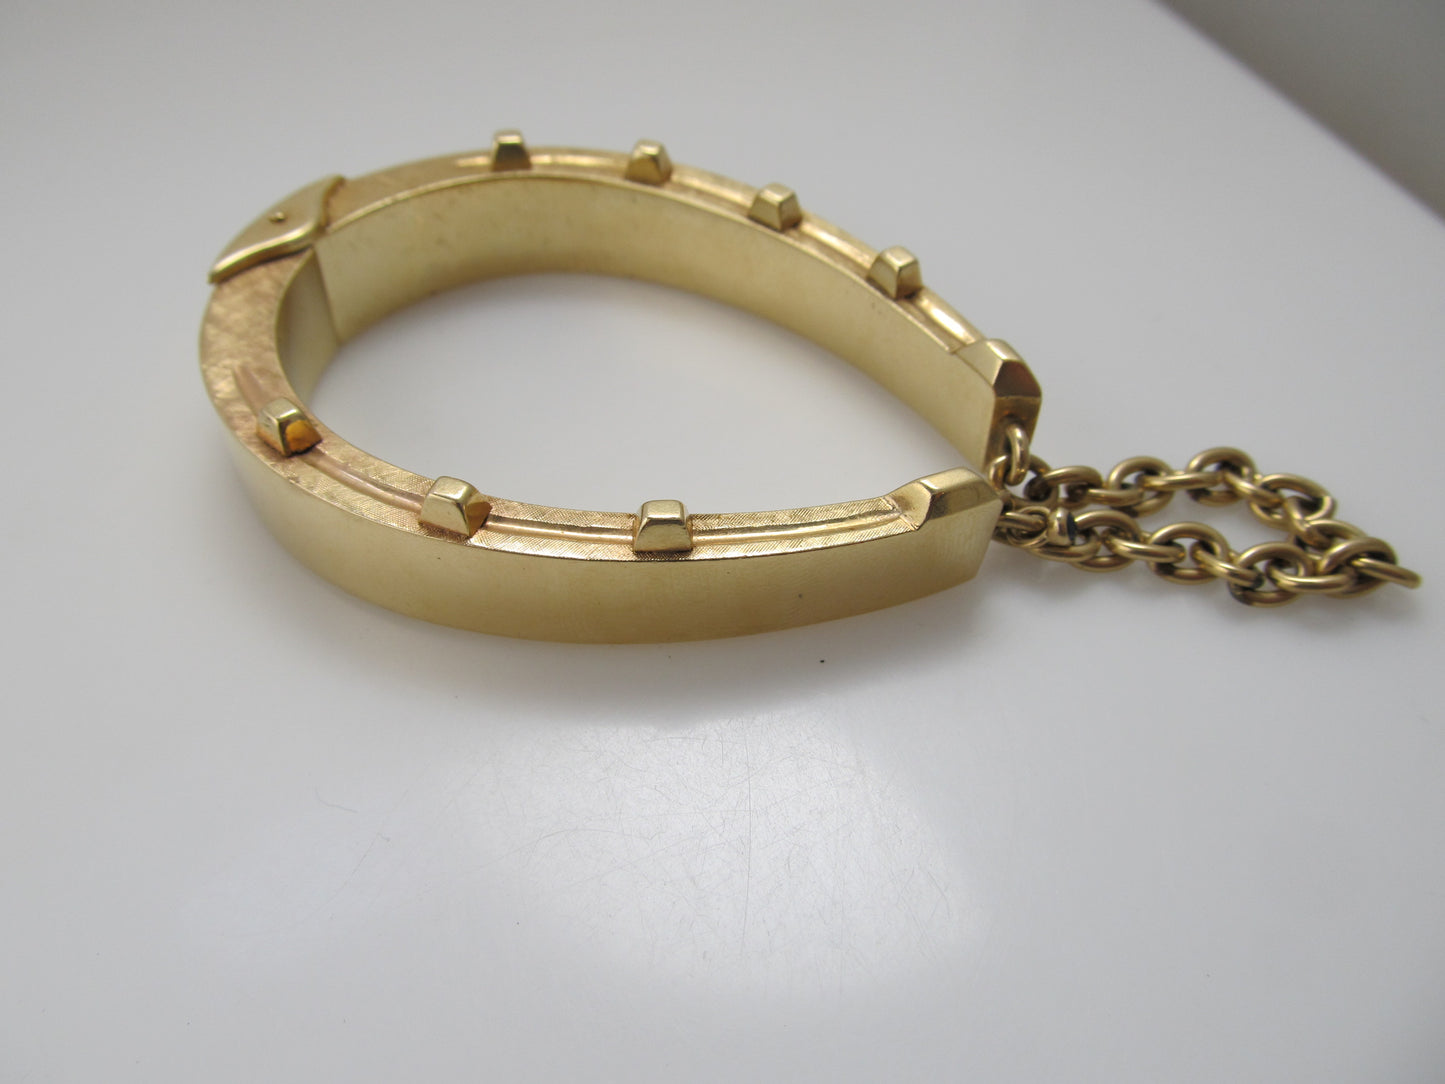 Amazing solid 14k horseshoe bangle bracelet